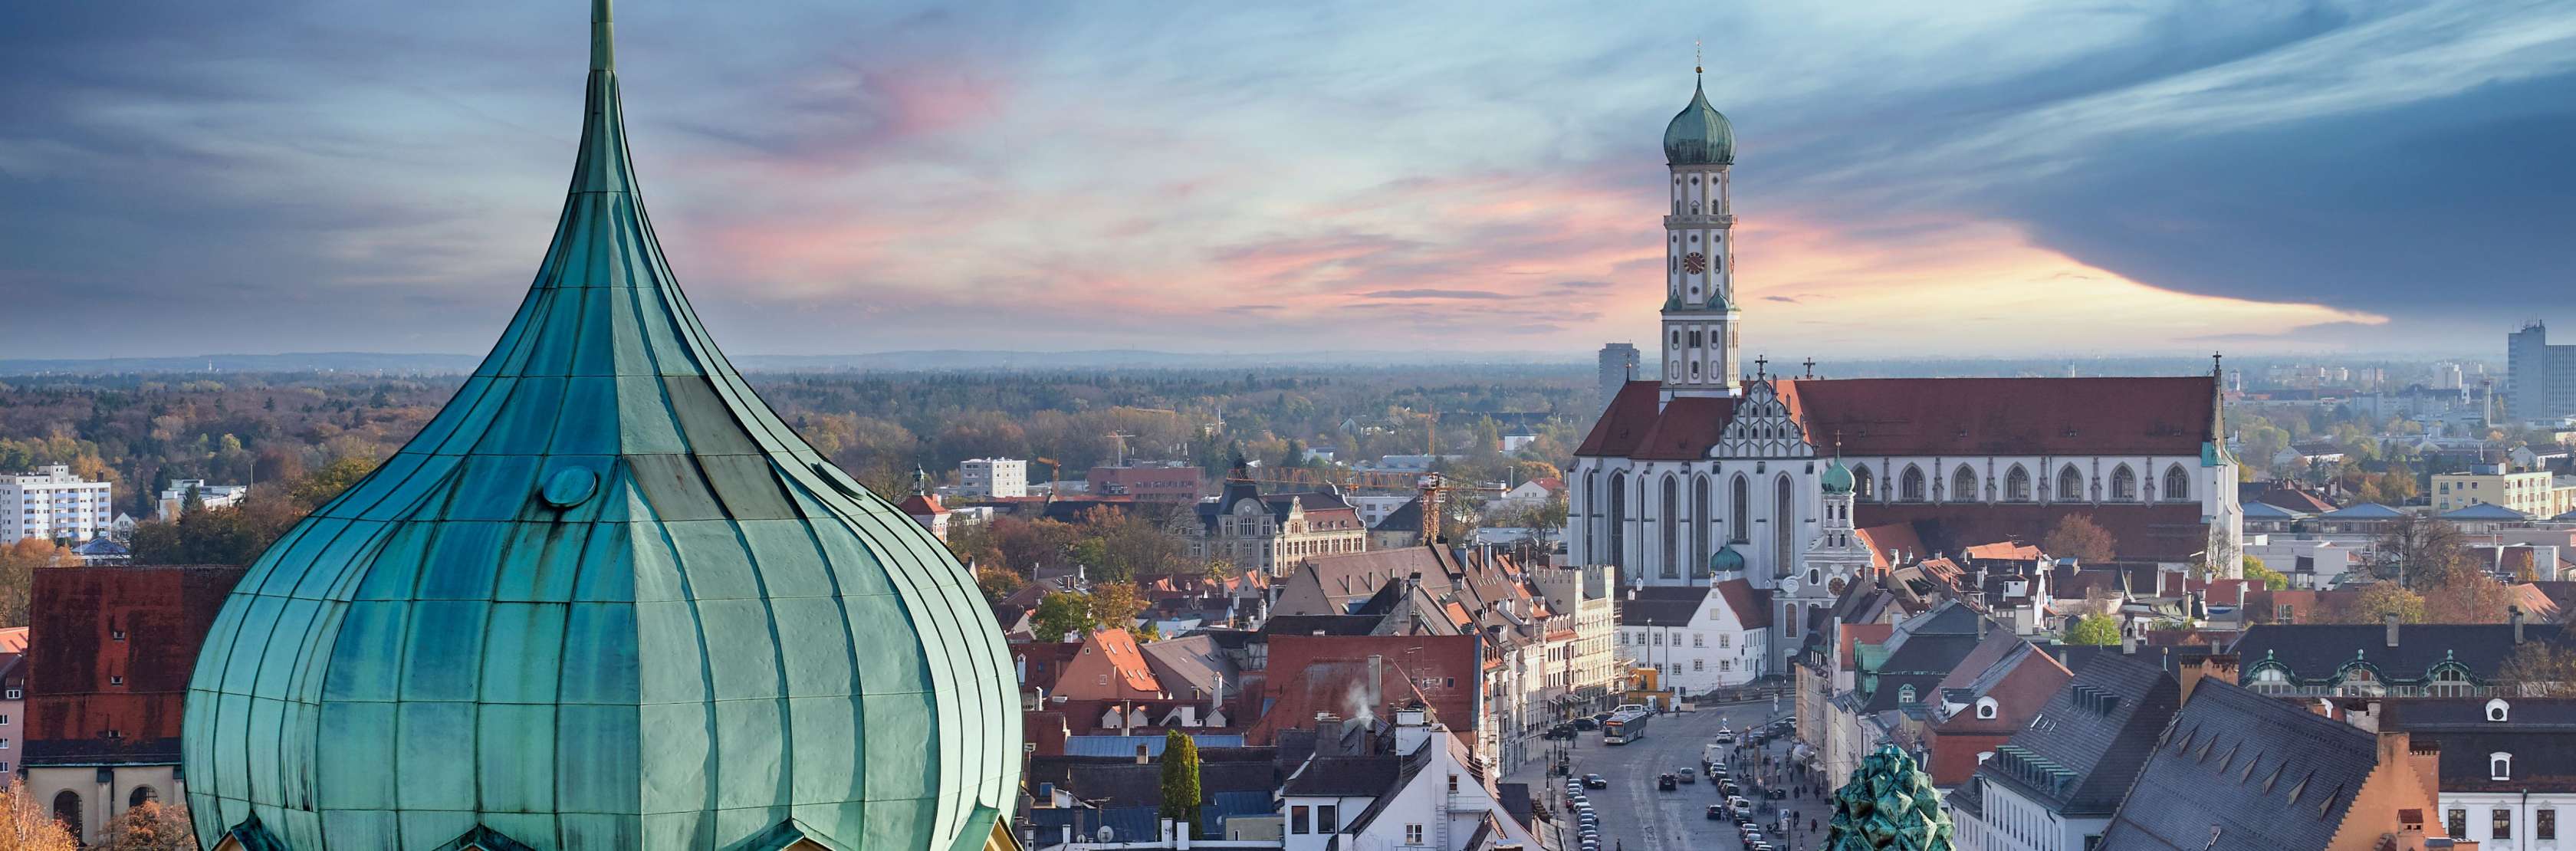 Agentursuche Augsburg - Blick auf die augsburger Altstadt und die Ulrichskirche